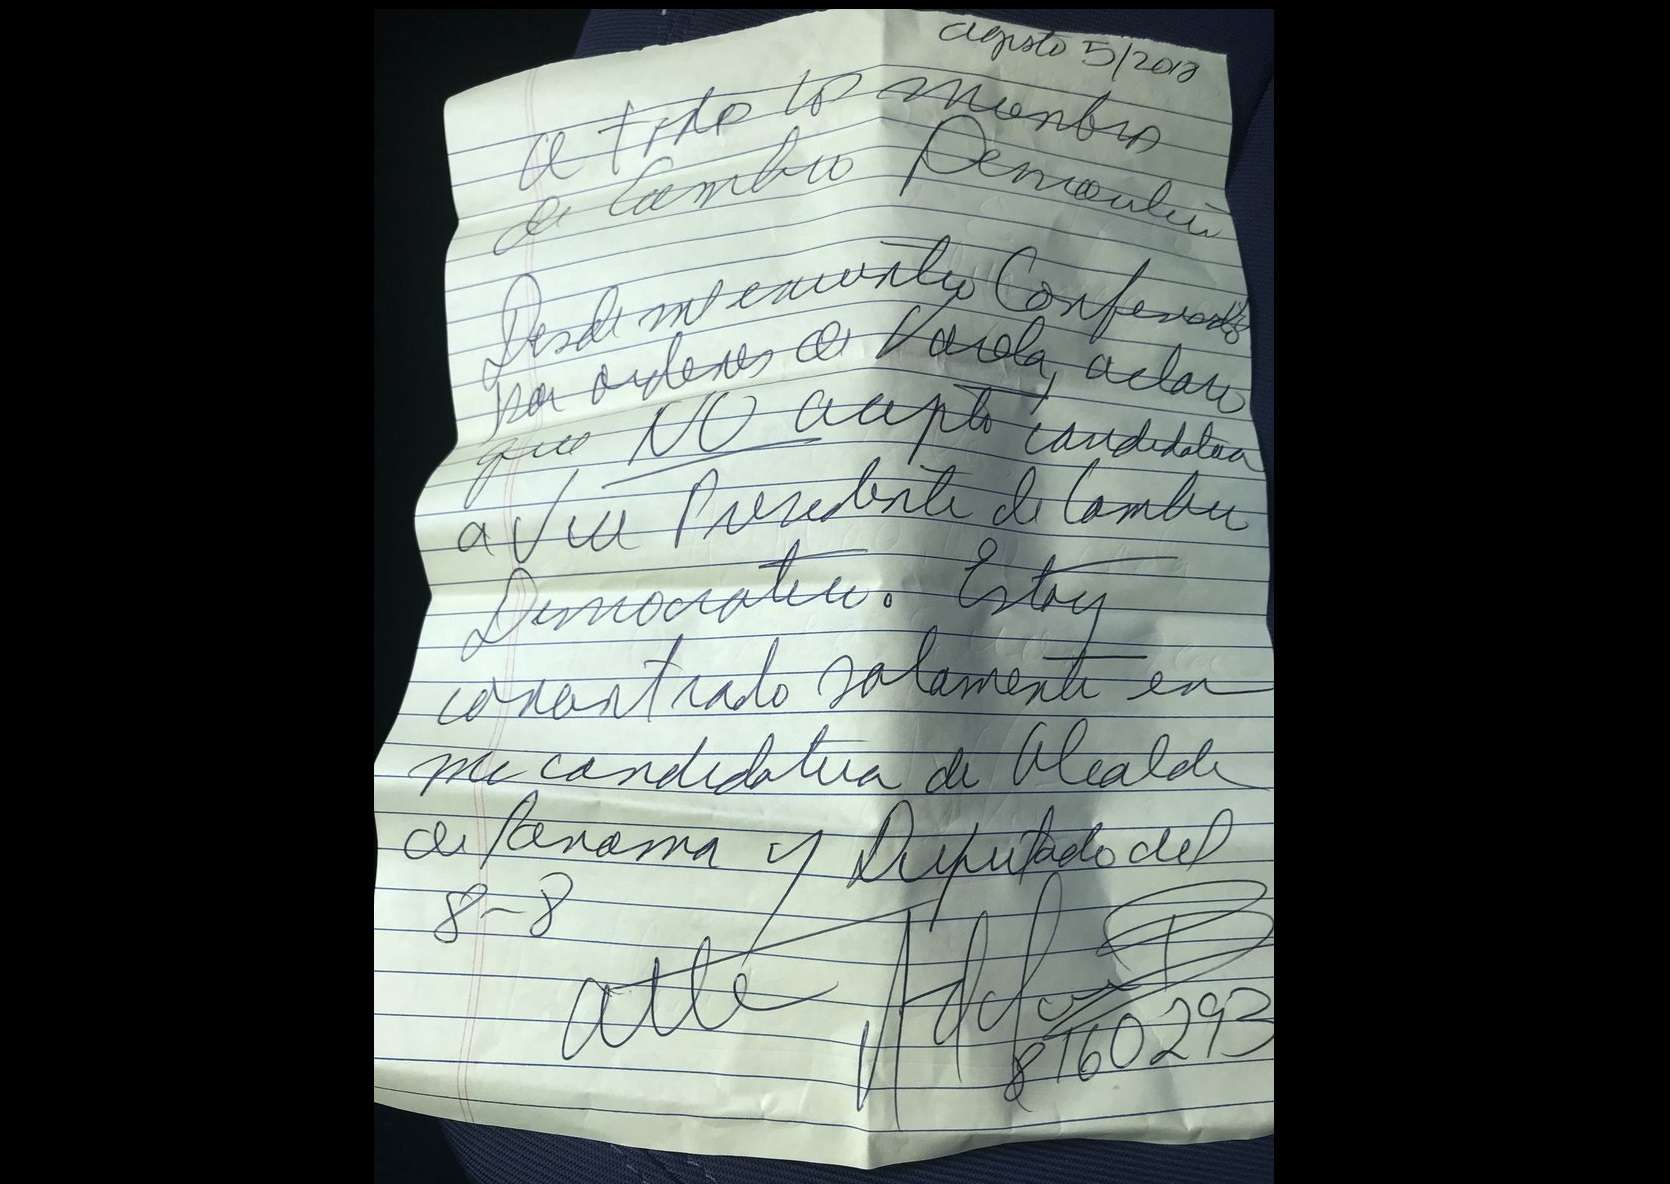 Imagen de una carta escrita a puño y letra del expresidente Ricardo Martinelli.